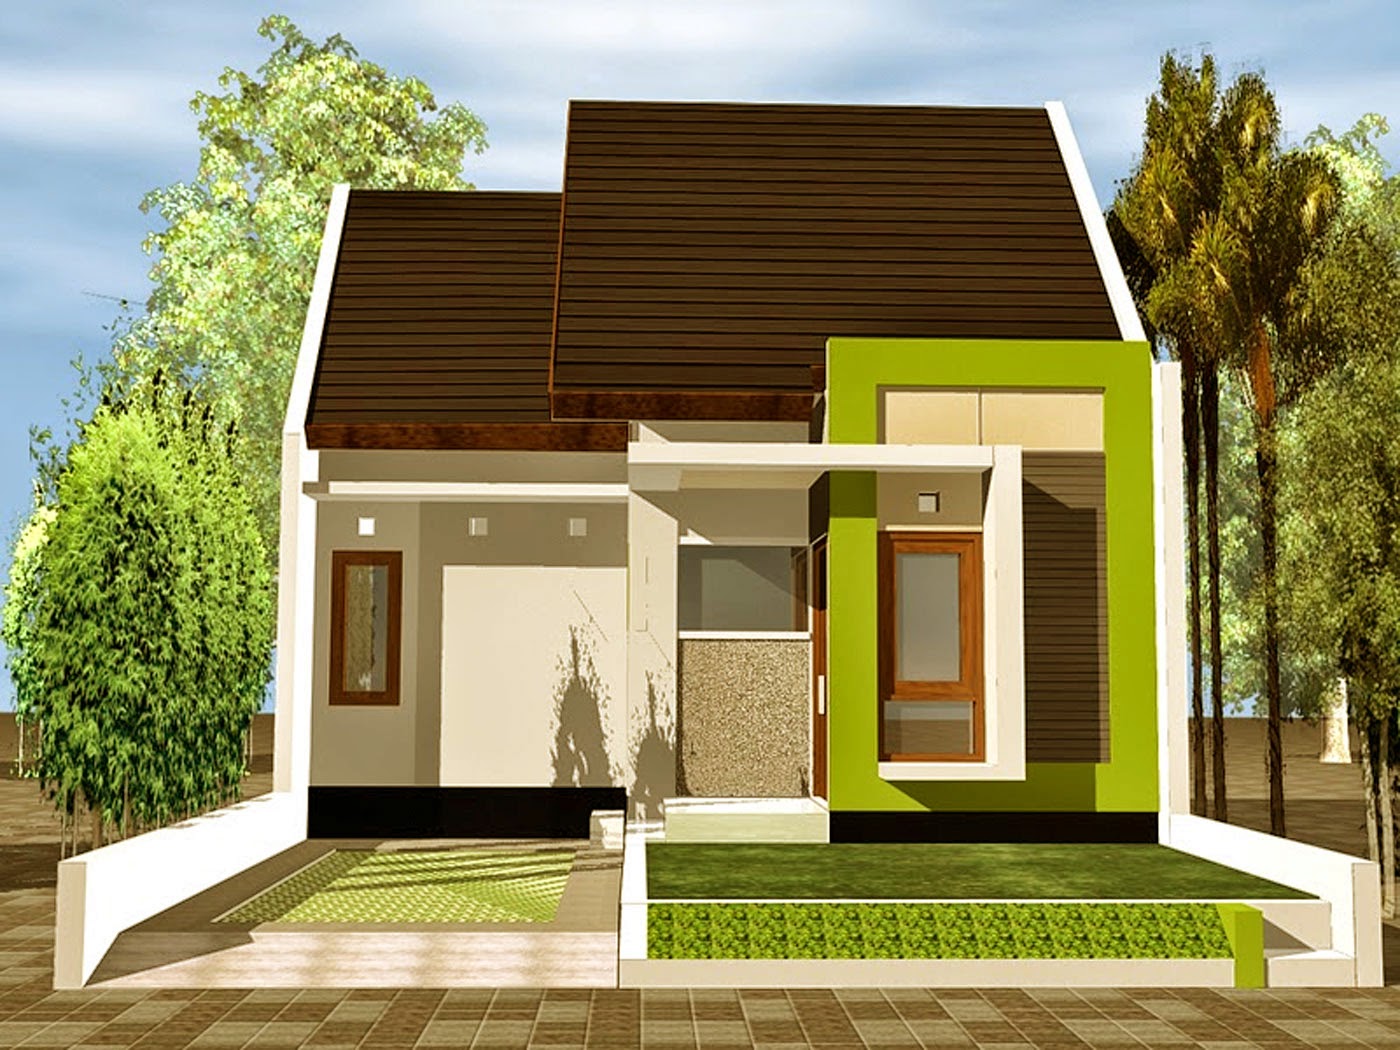 Gambar Desain Rumah Minimalis Type 54 3 Kamar Terbaru Desain Rumah